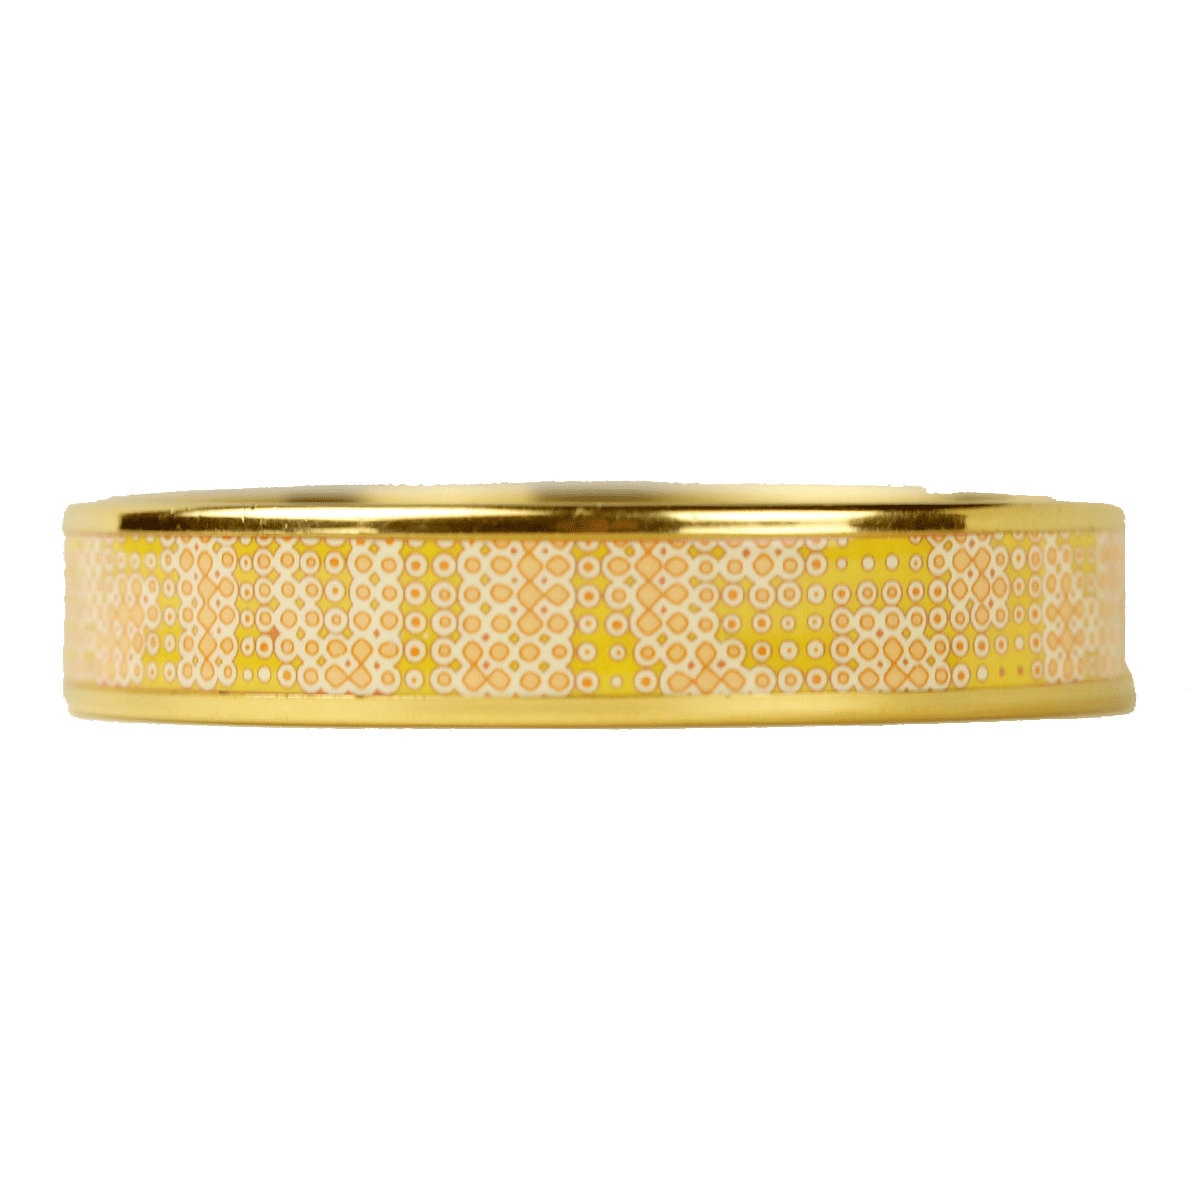 Hermes Bracelet Enamel Gold 65 Narrow | Bangle